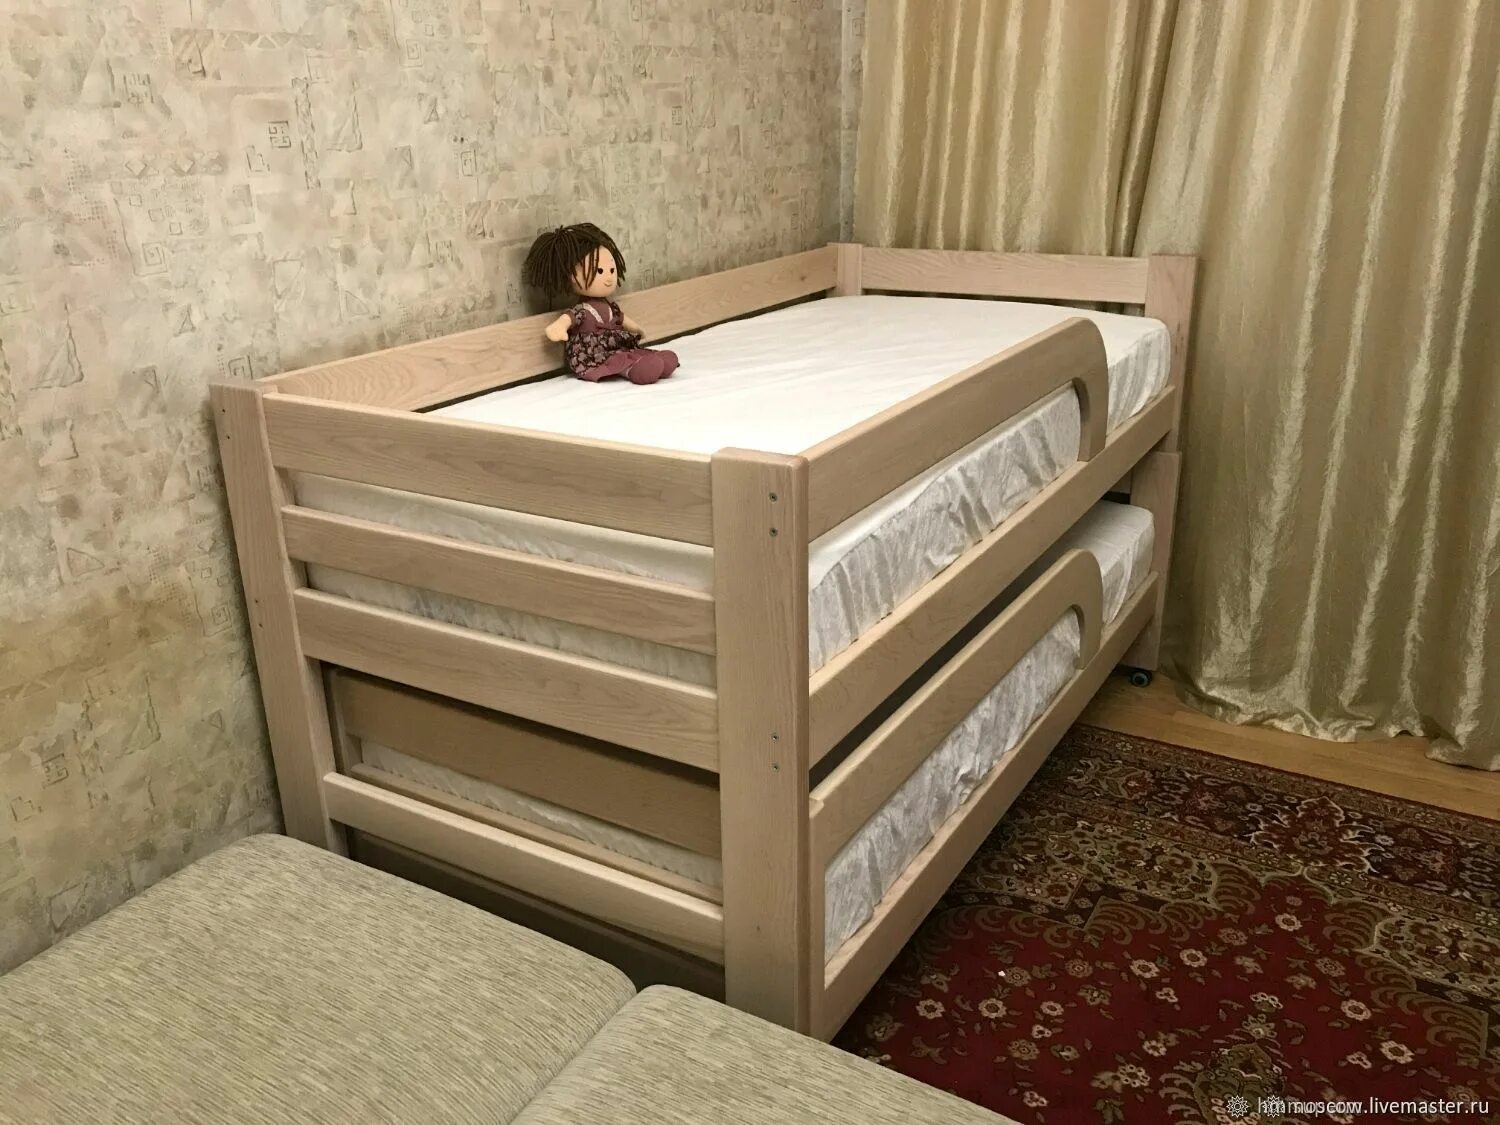 2 выдвижная кровать. Кровать Вирсавия-2 выкатная. Элис 2 выдвижная кровать. Выкатная двухъярусная детская кровать Вирсавия-4. Кровать детская двойная выкатная 160×80.